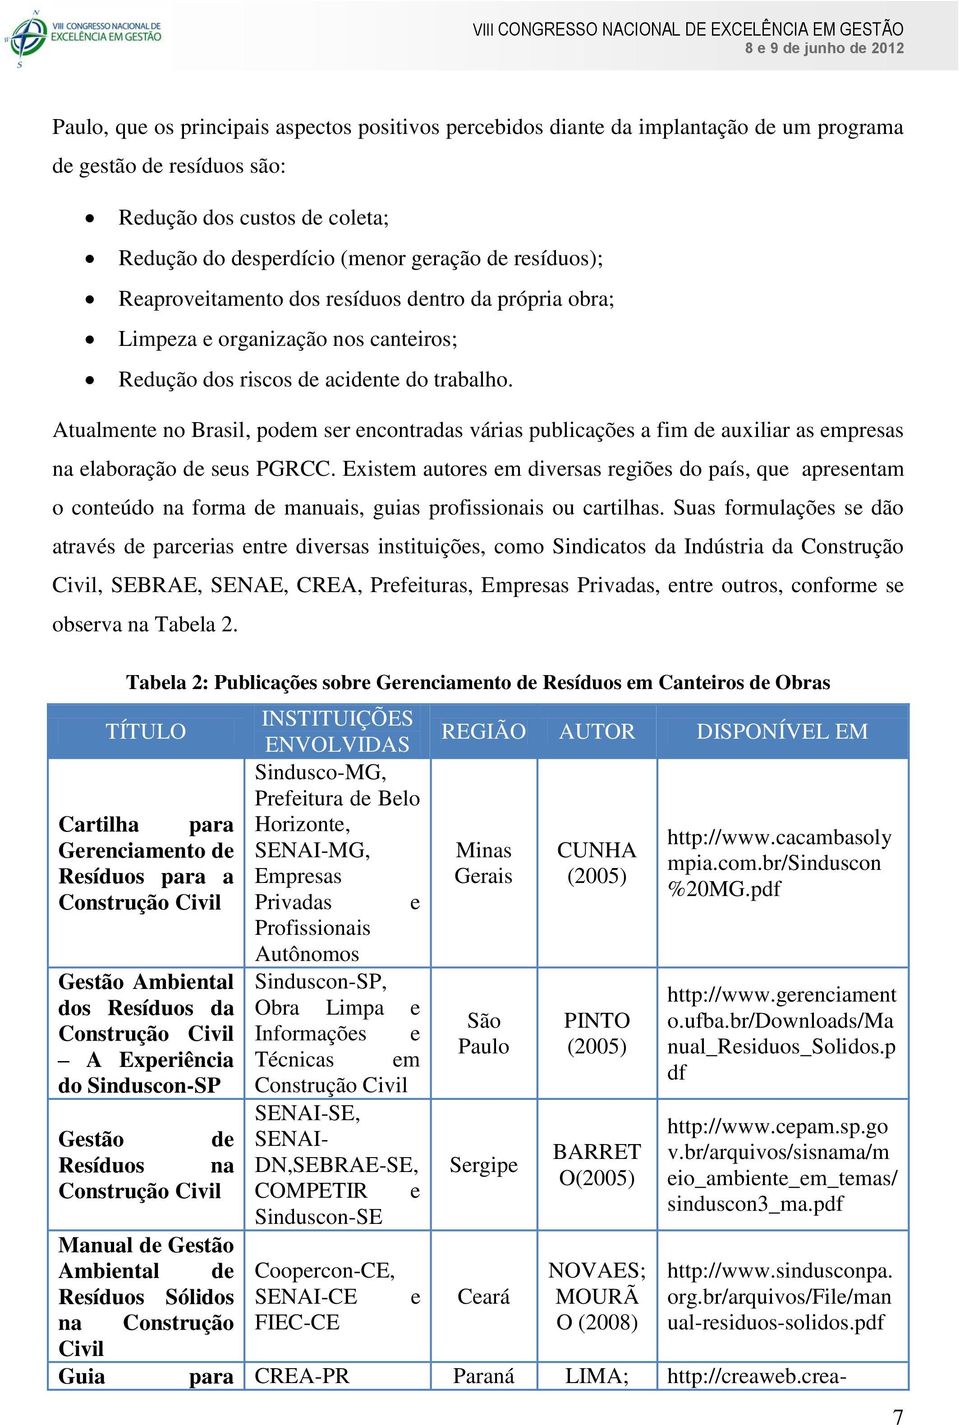 Atualmente no Brasil, podem ser encontradas várias publicações a fim de auxiliar as empresas na elaboração de seus PGRCC.